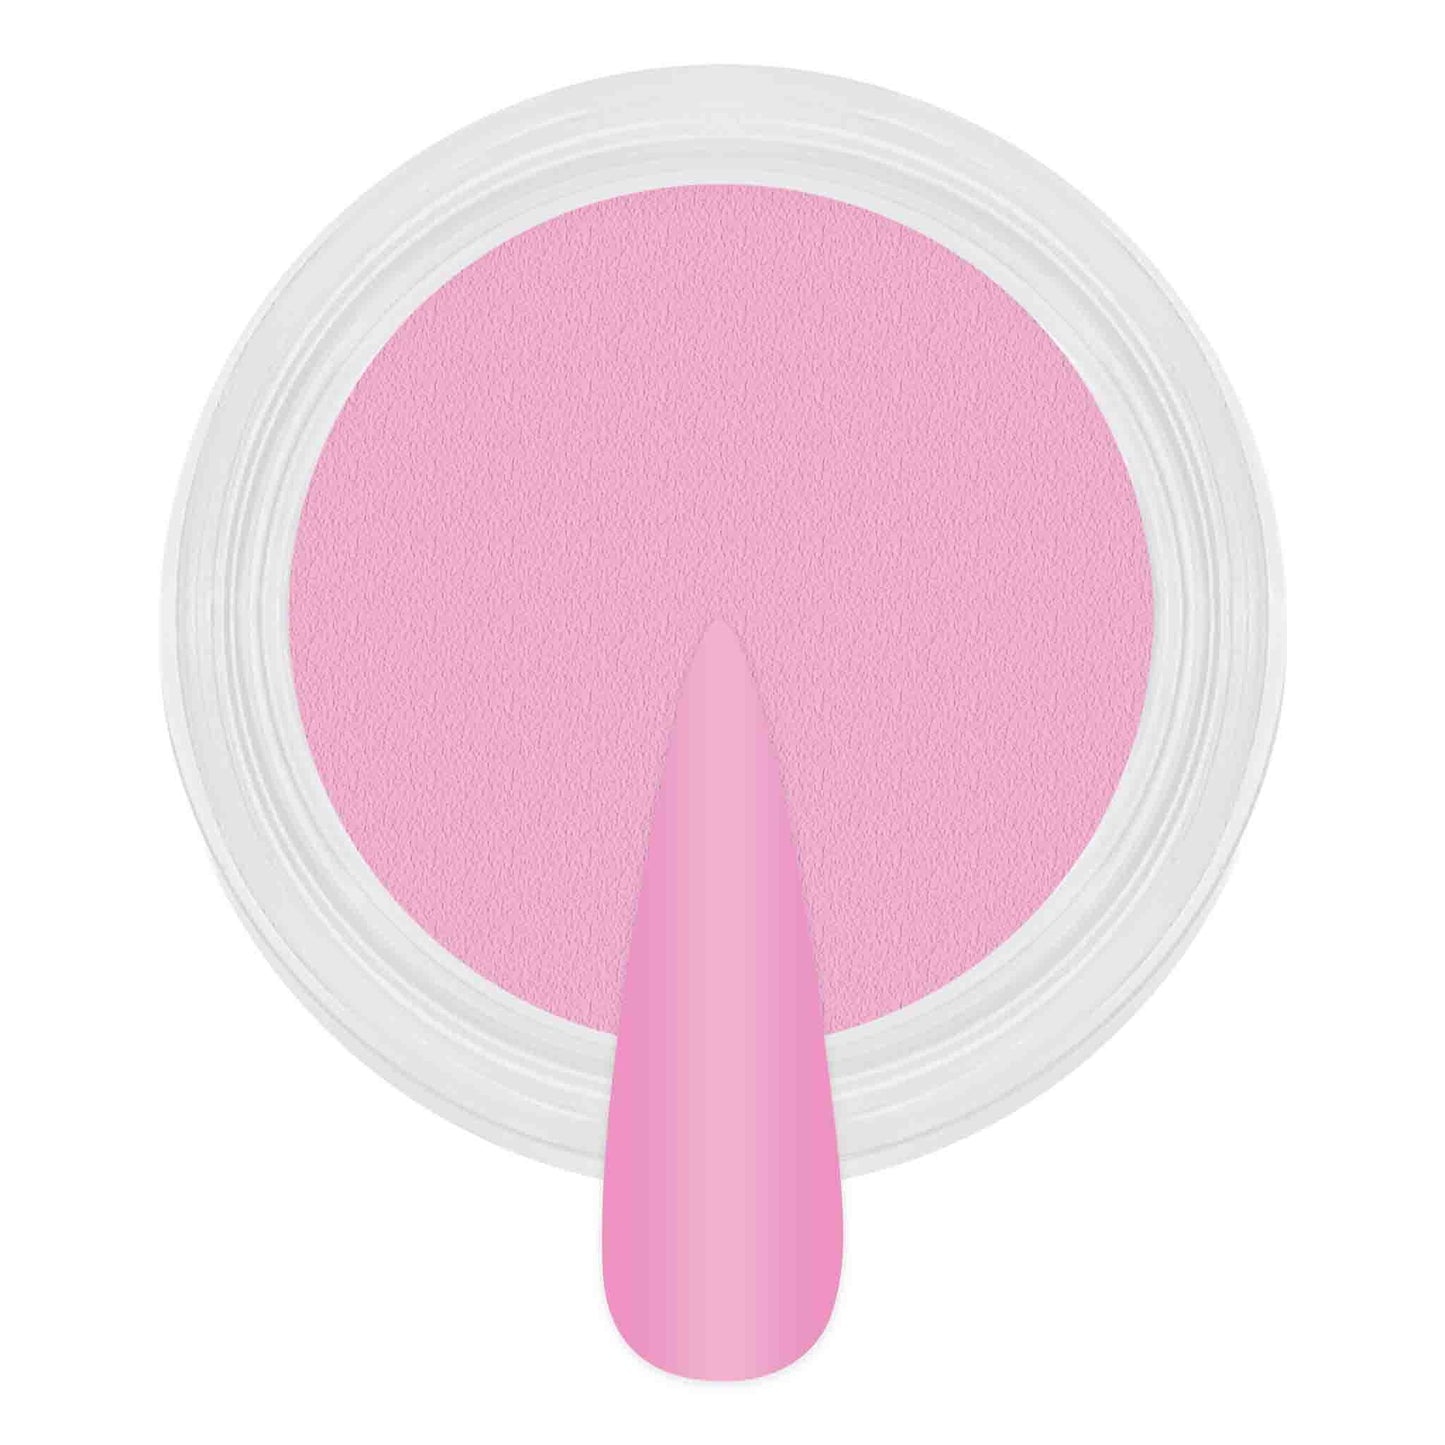 Dip & Acrylic Powder - D306 Pink Dazzle